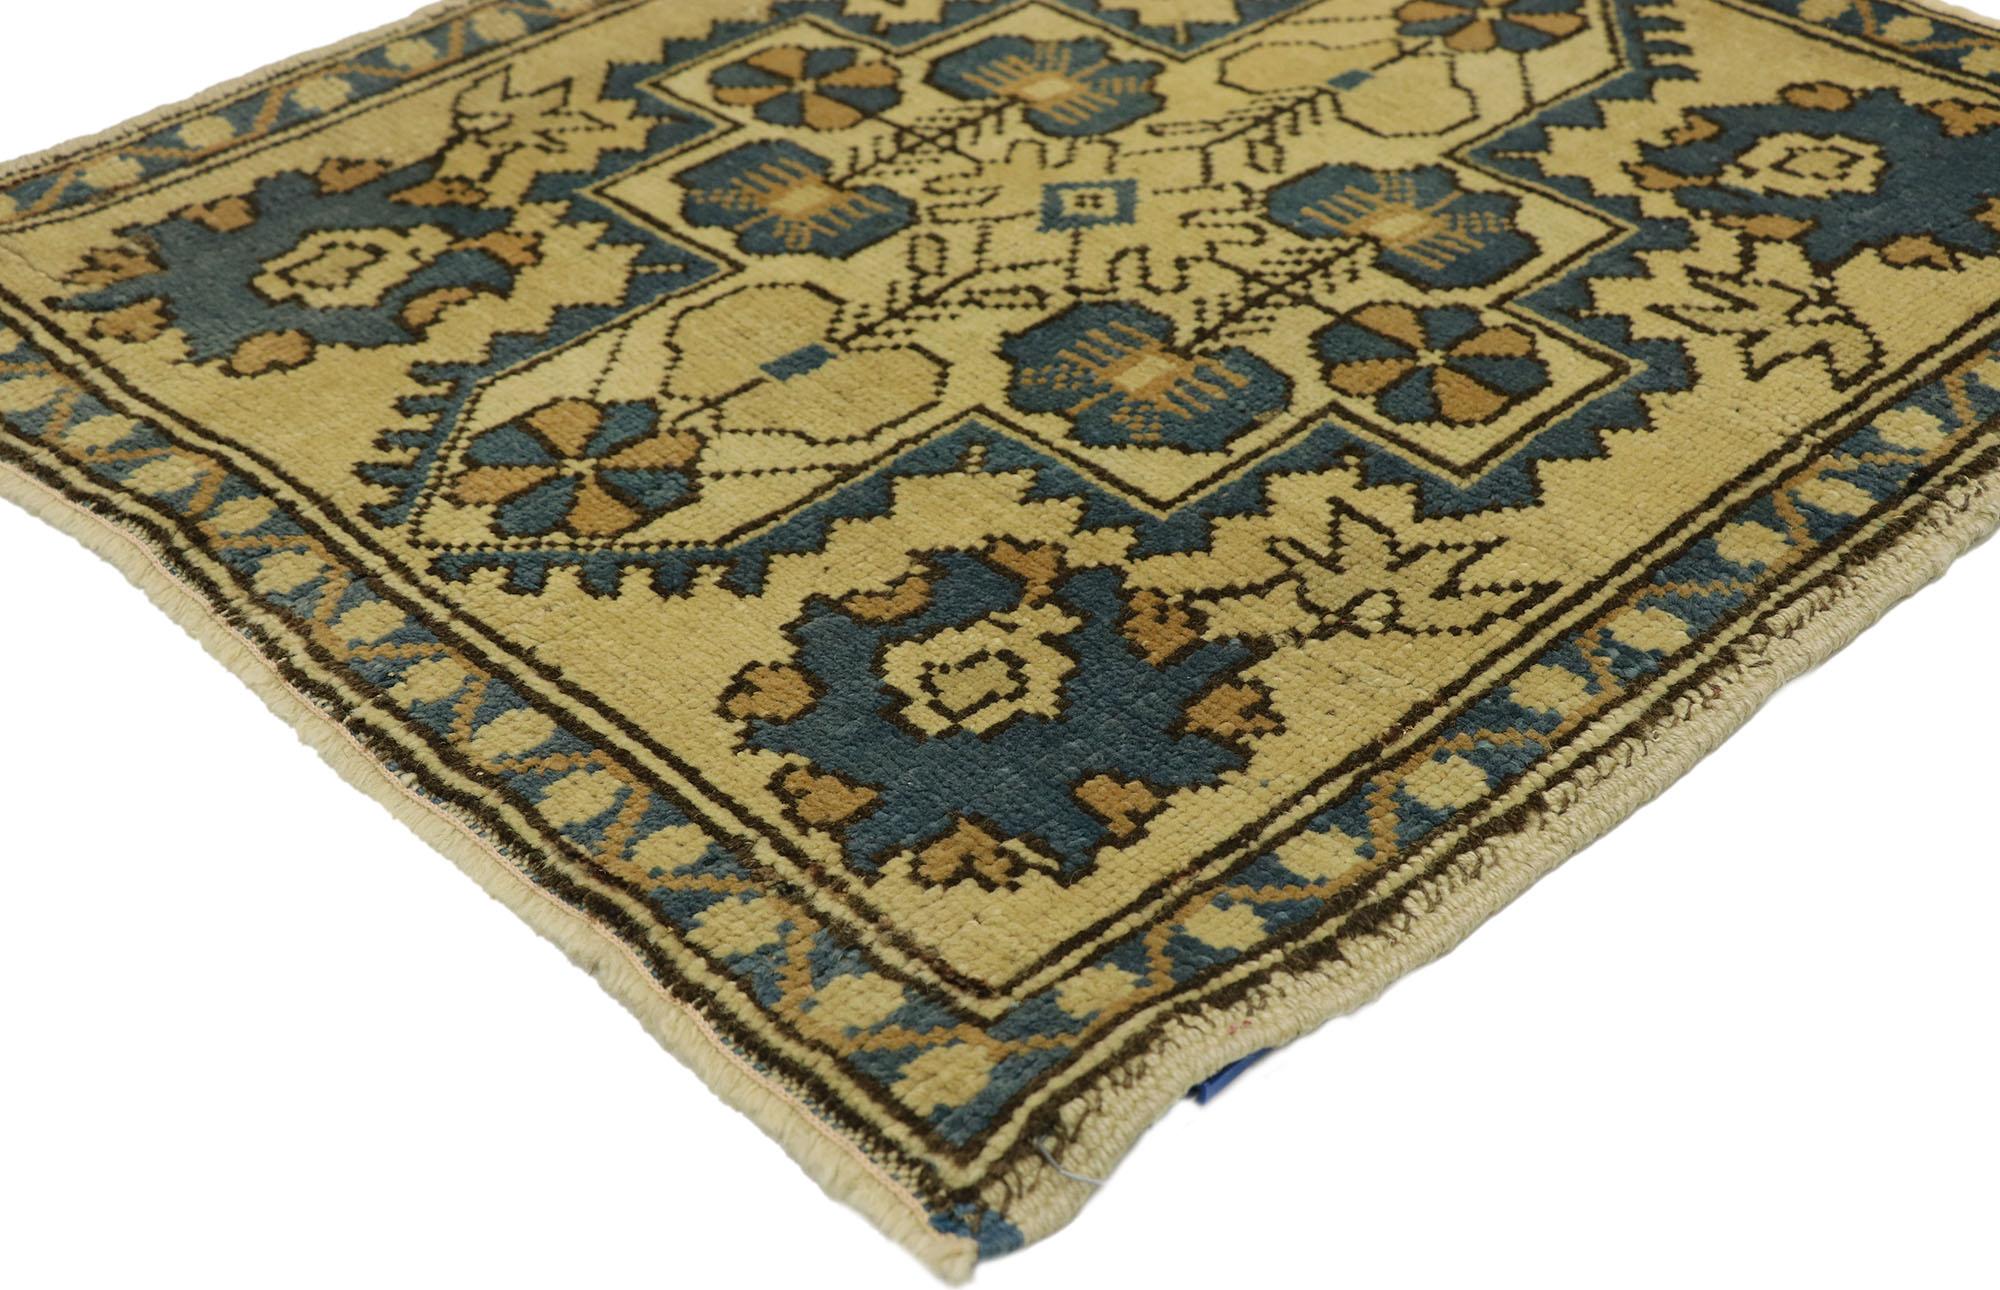 51260 Türkischer Yastik-Teppich Vintage, 02'03 x 02'04. In diesem handgeknüpften türkischen Yastik-Teppich aus Wolle vereinen sich mühelose Anmut und subtile Raffinesse zu einem fesselnden Stück mit einem Hauch von mediterranem Charme. Die